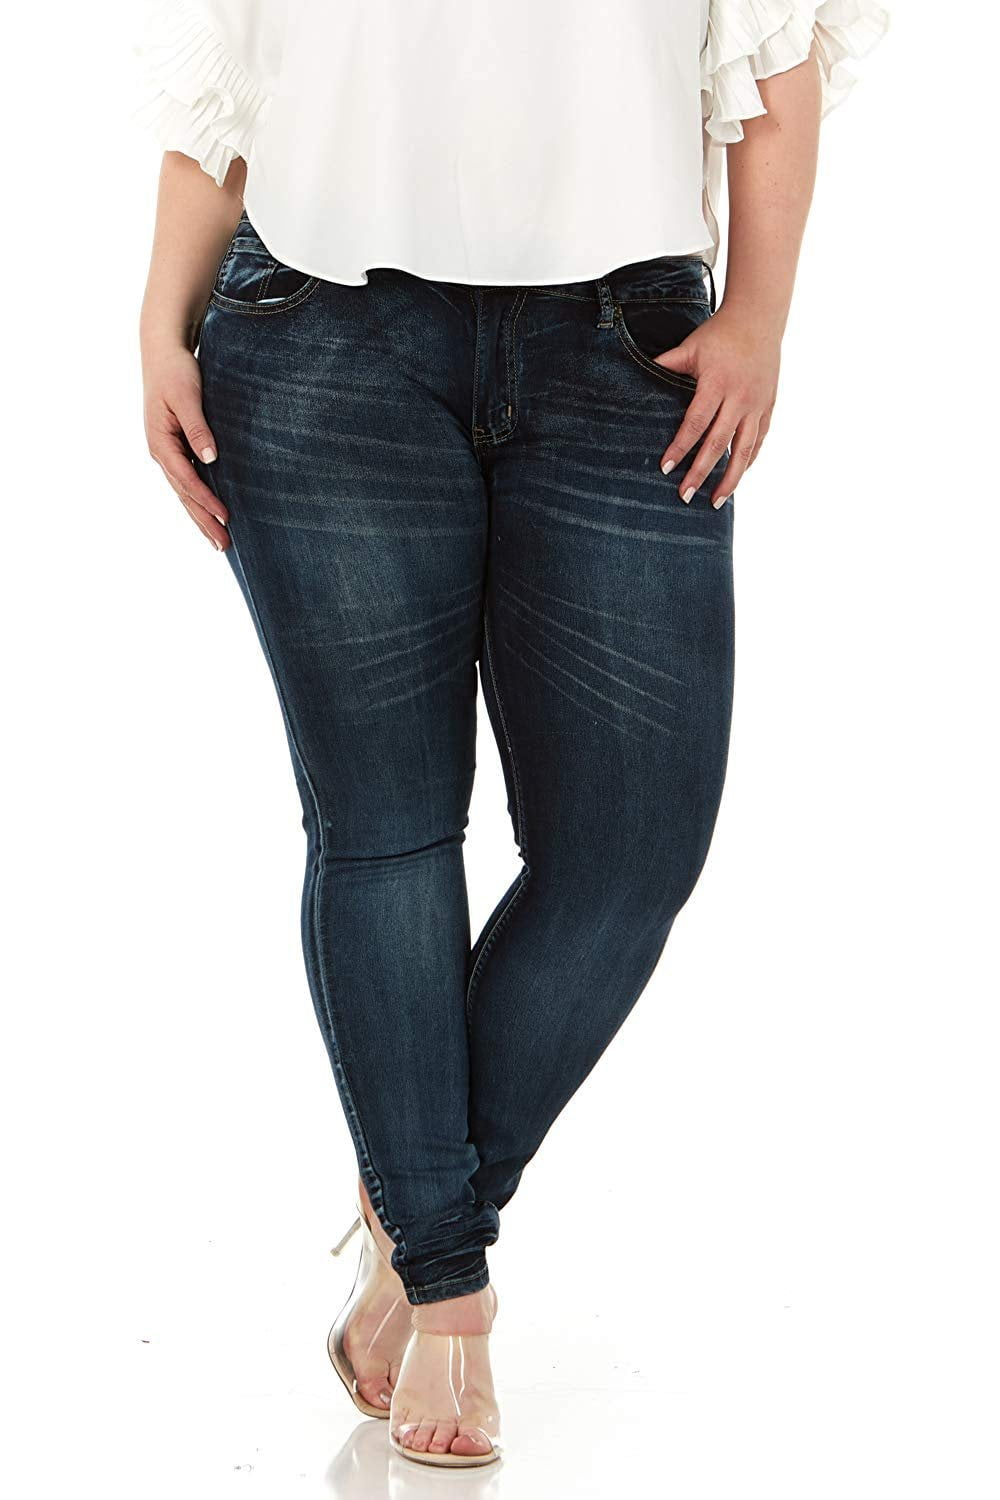 Smart Jeans Cute Fits Women and TeensJuniors Plus Size Mid Rise Skinny Denim 